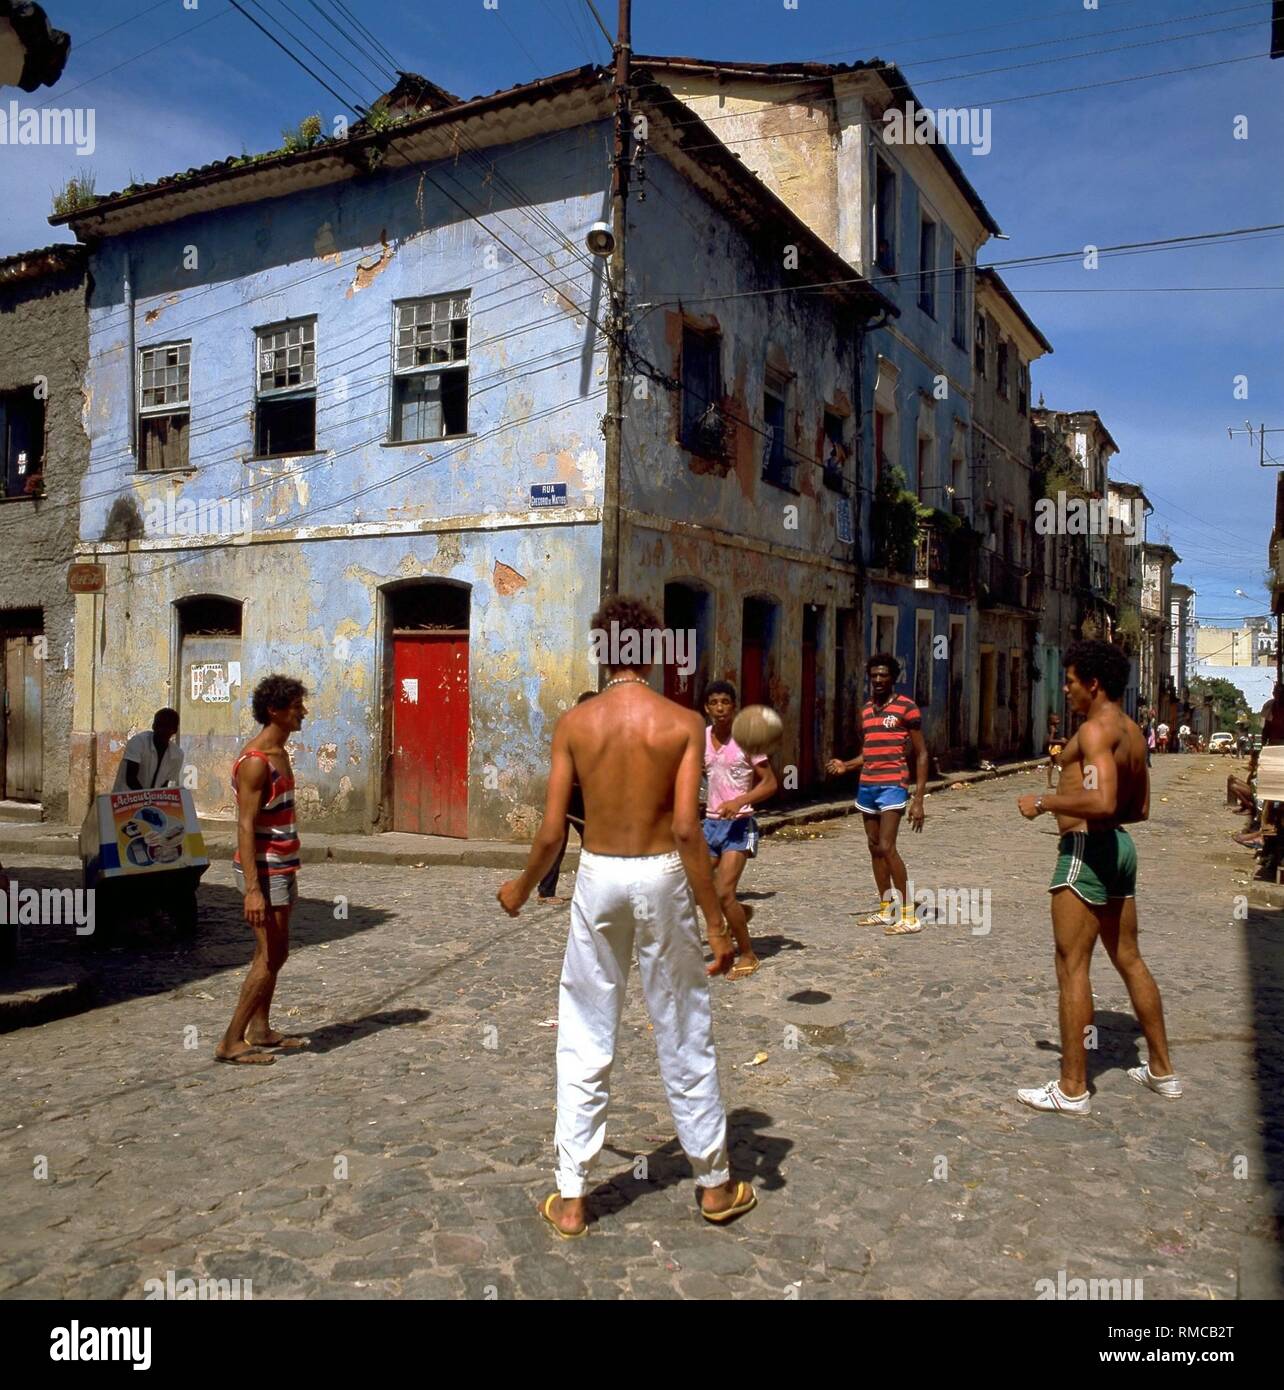 Jugendliche spielen Fußball auf einer Straße in Salvador. Stockfoto